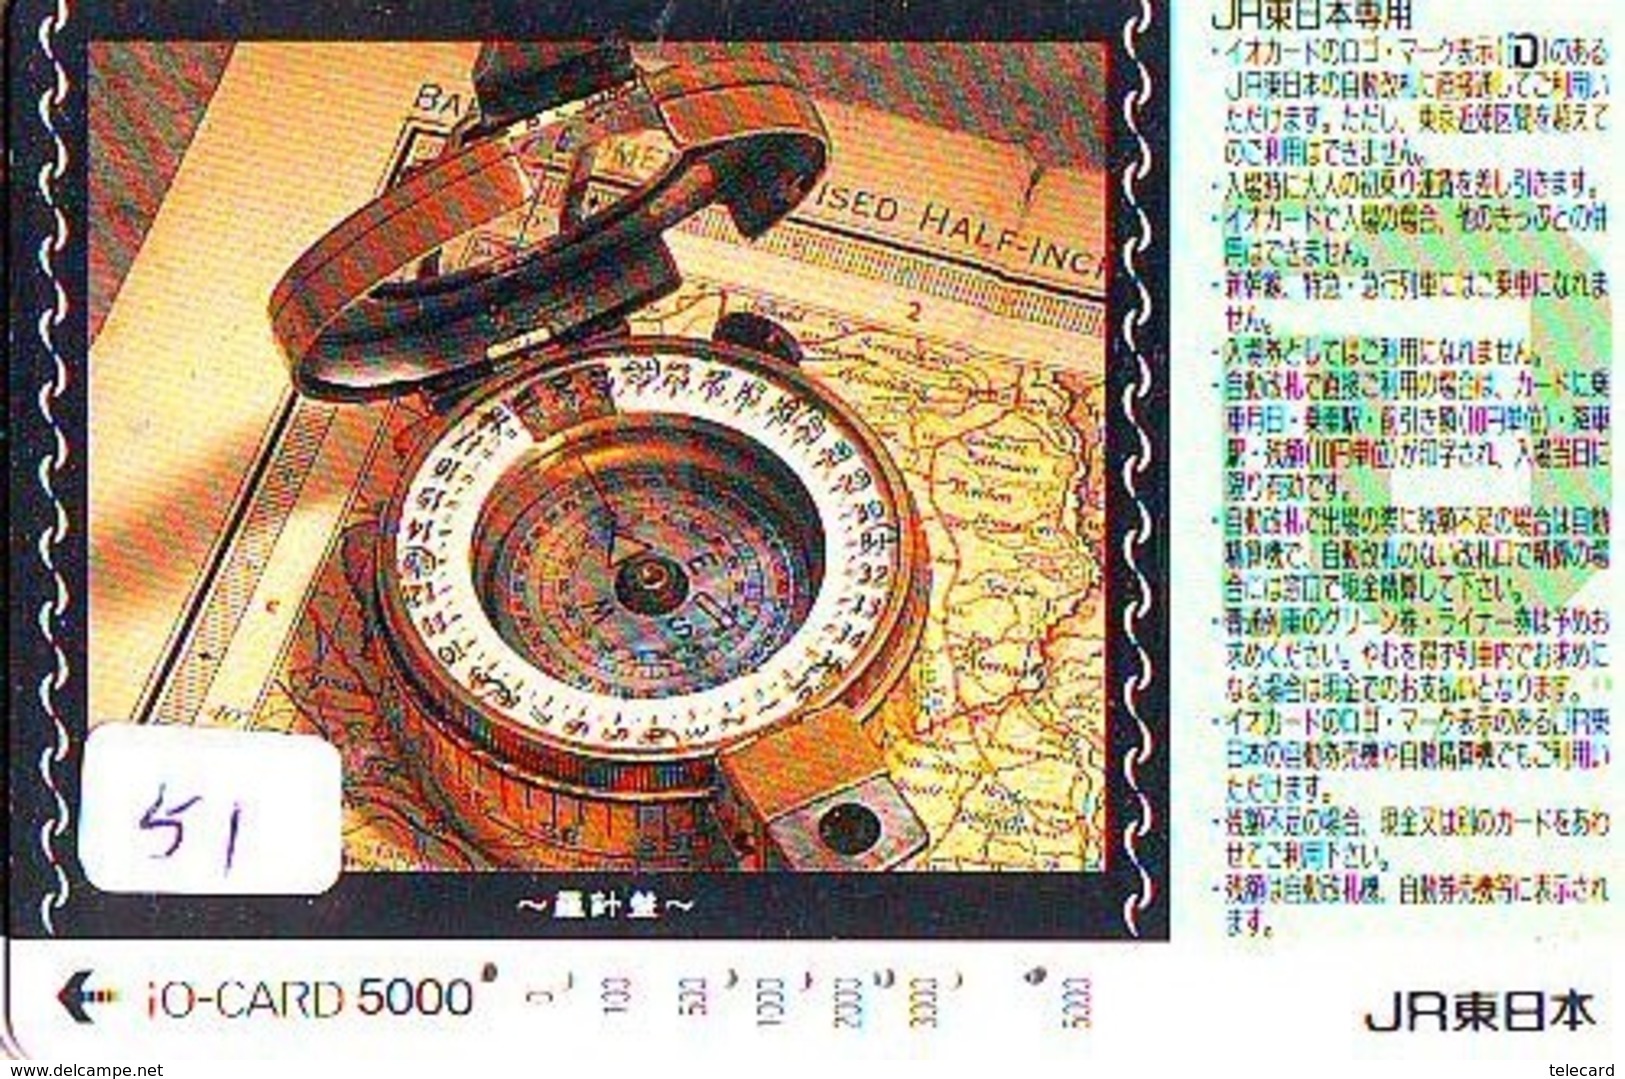 Compass Boussole Kompaß Kompas Sur Carte JAPAN (51) East West South North - Astronomia